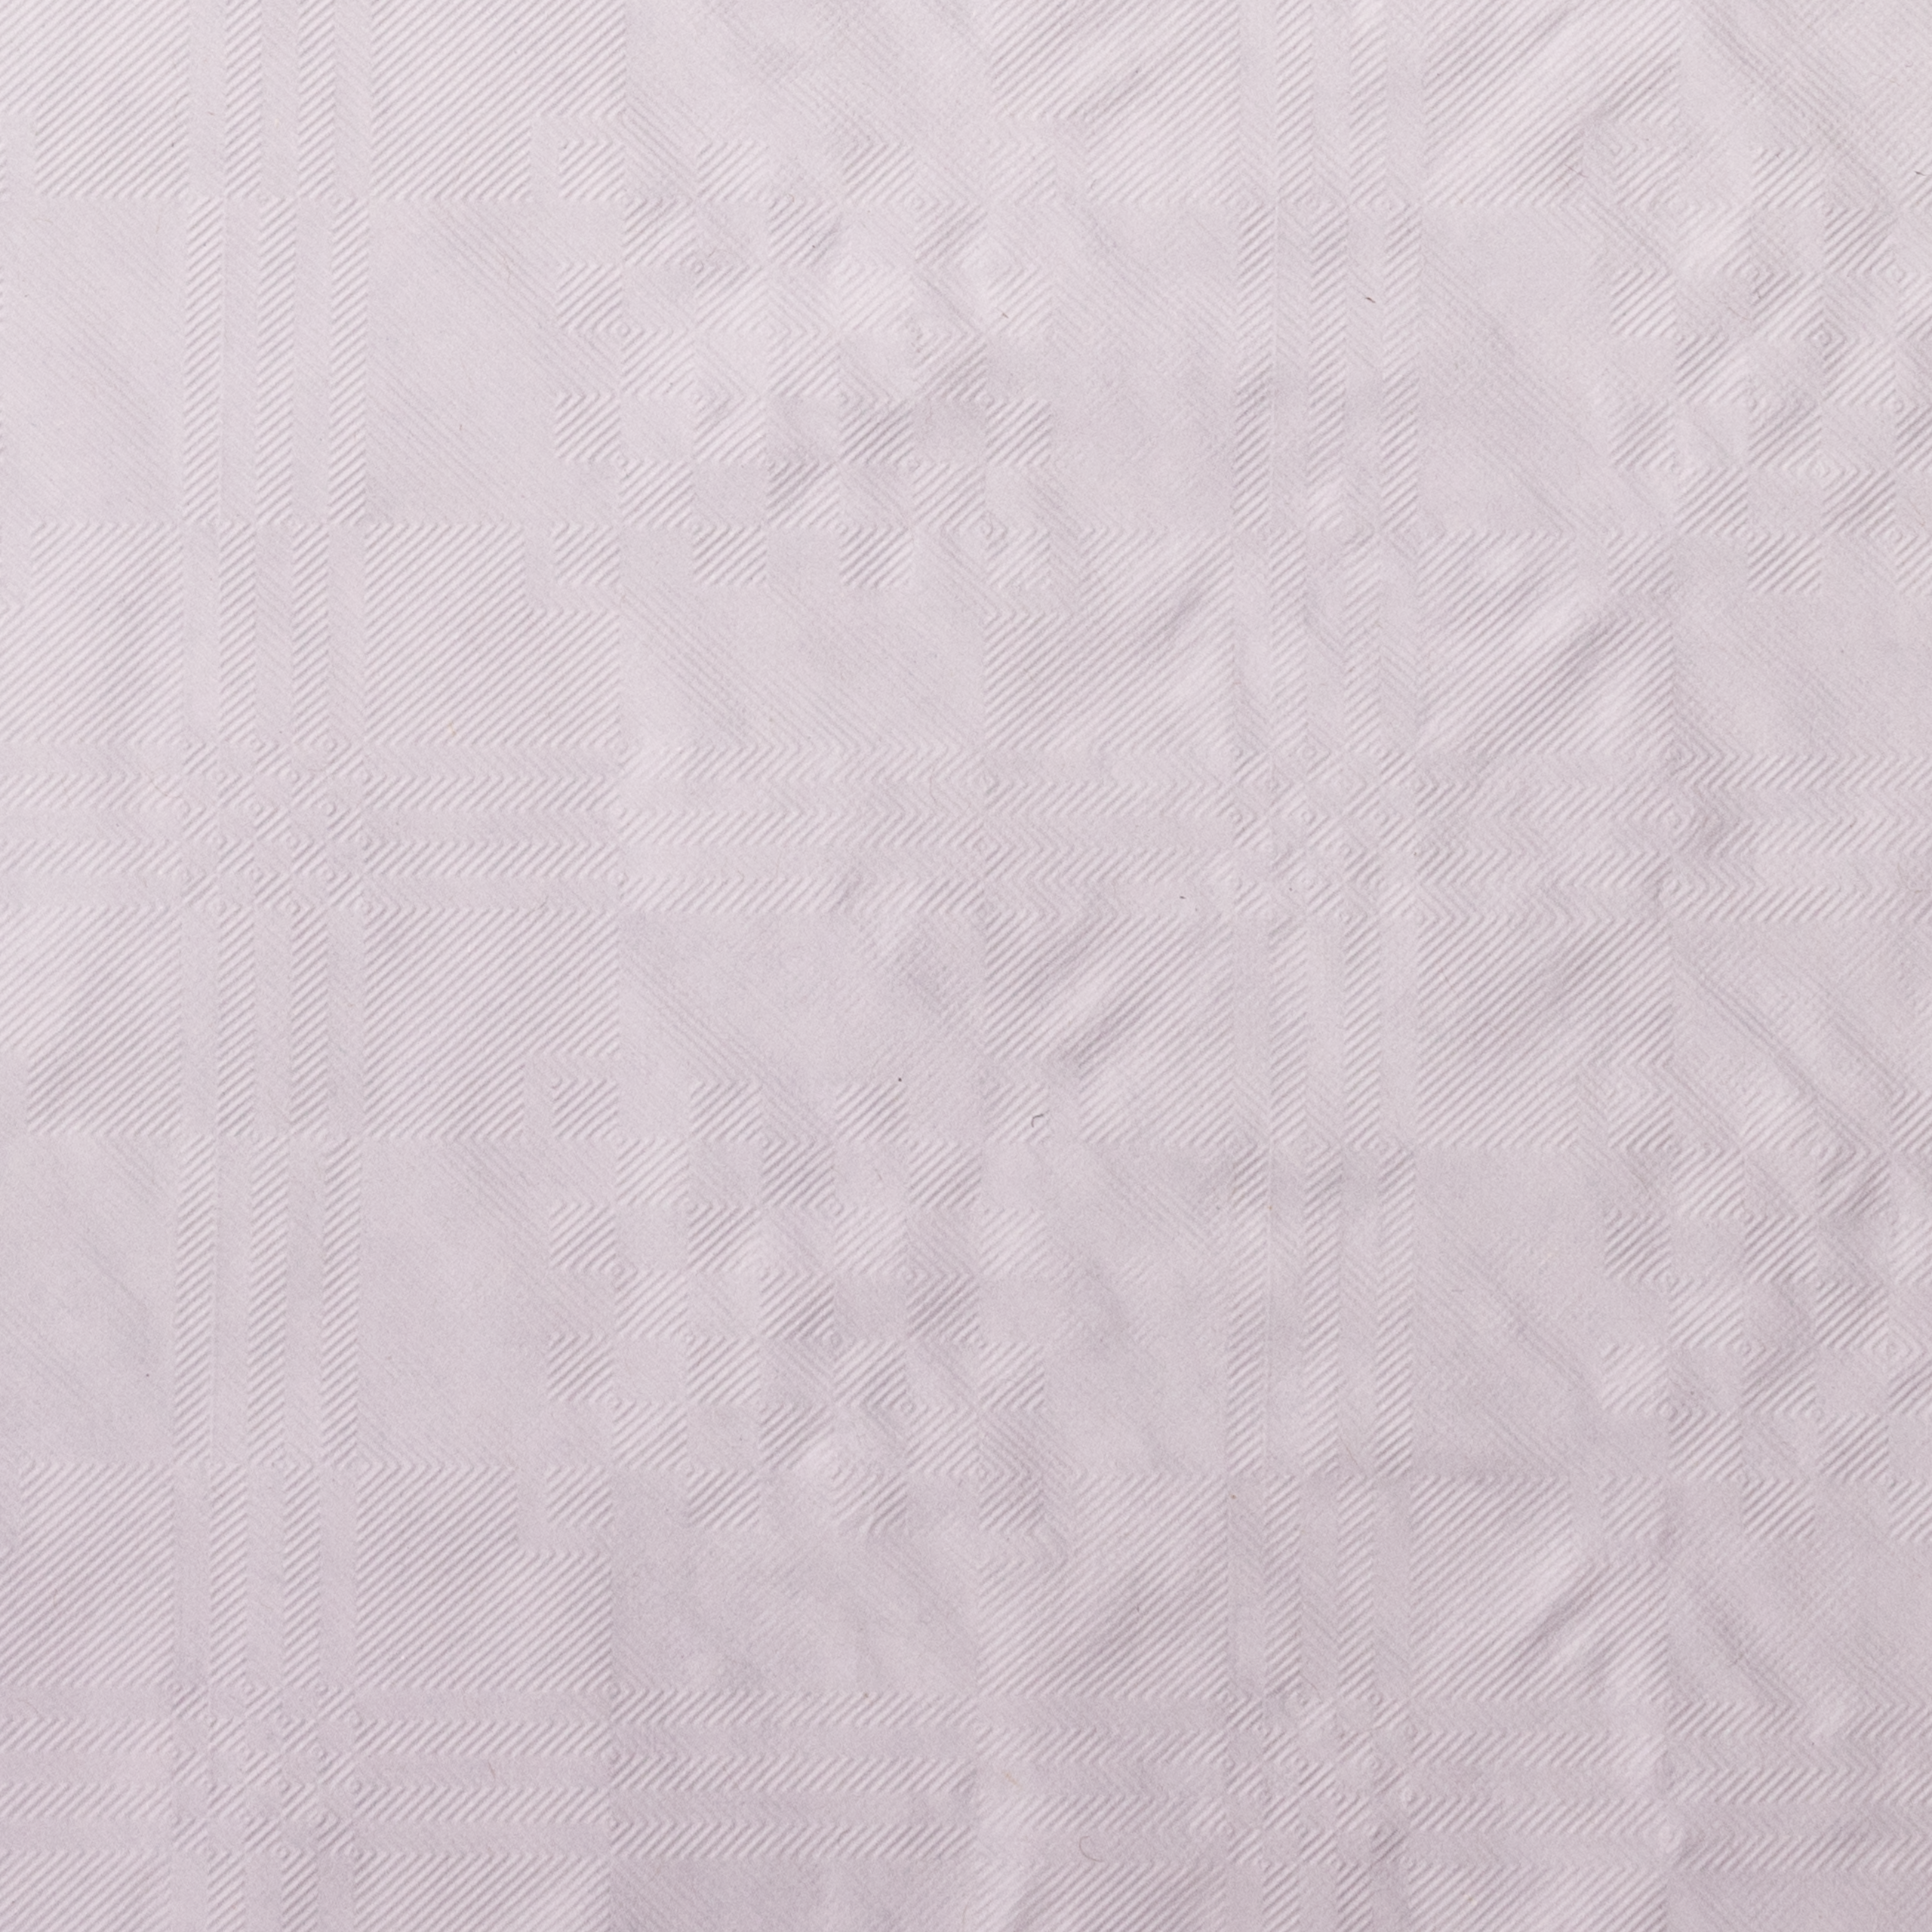 Tischtuchpapier weiß 50g/m², 1 x 10m